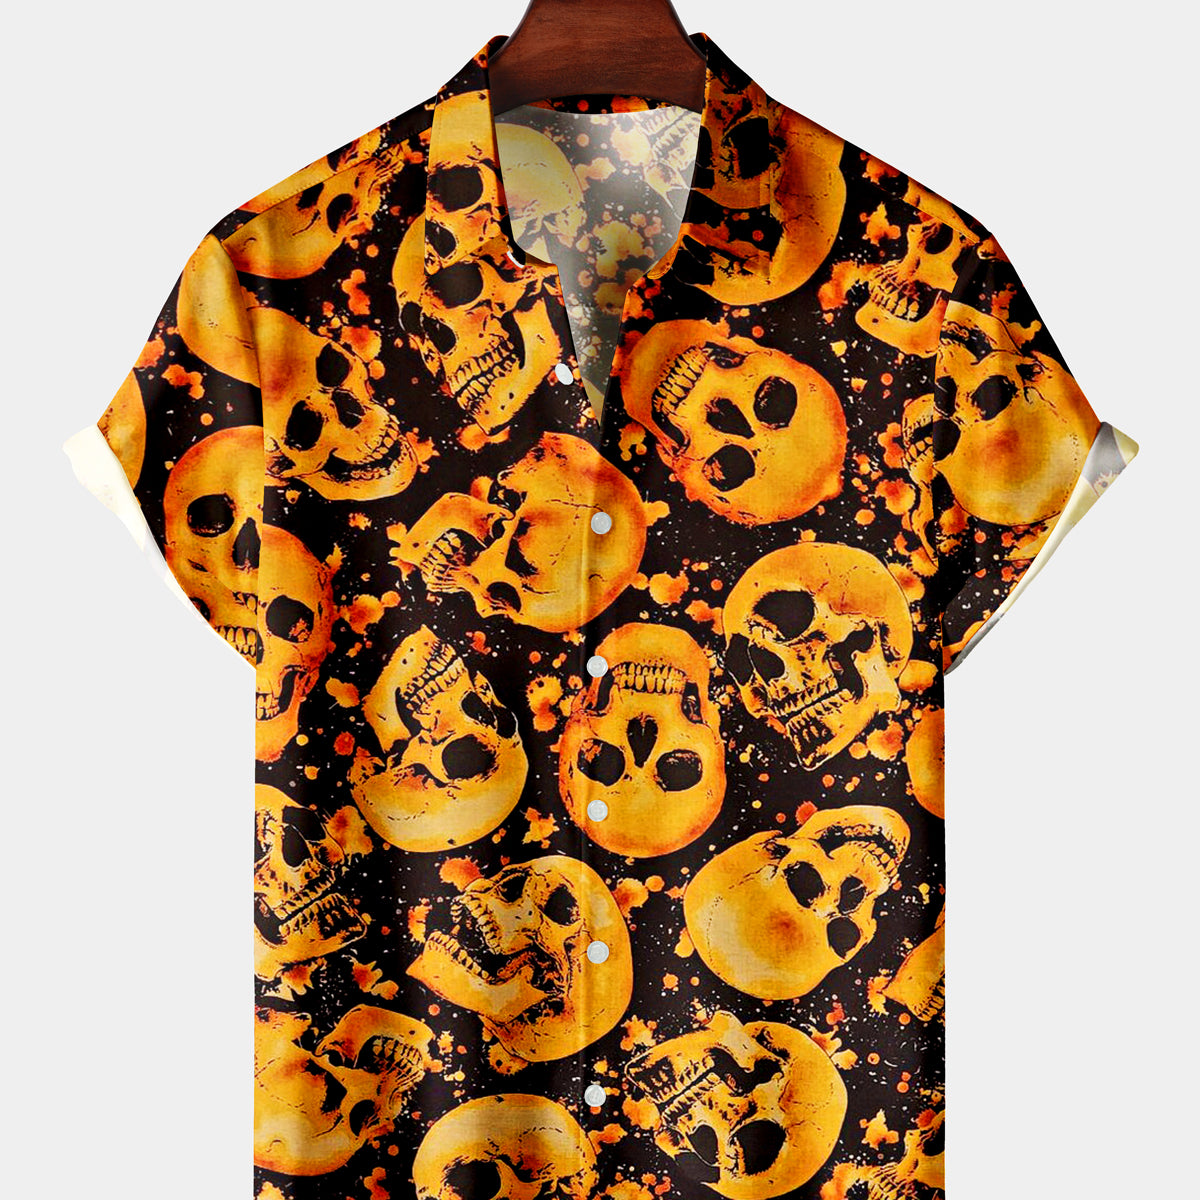 Men's Vacation Orange Skull Black Short Sleeve Shirt